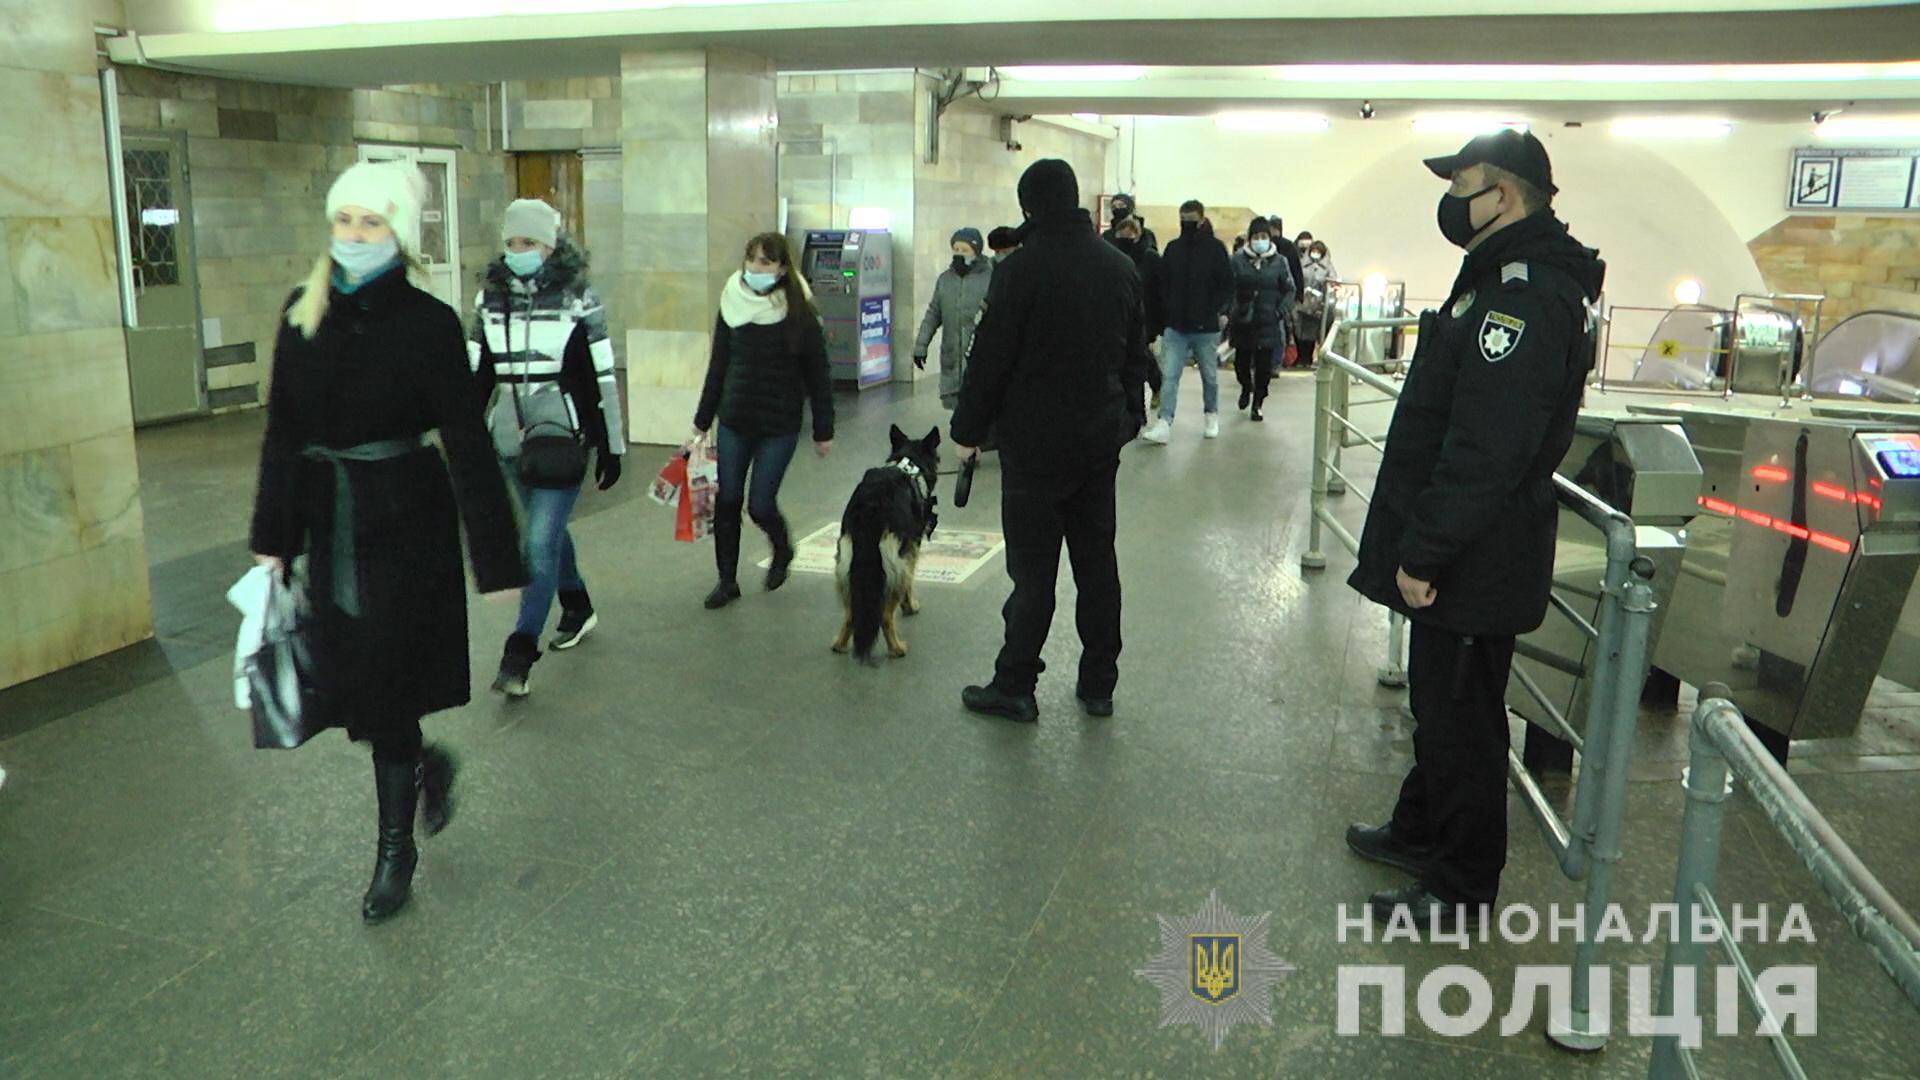 Полиция задержала в метро харьковчанина с 12 граммами героина. Теперь ему грозит столько же лет тюрьмы. Фото: Нацполиция